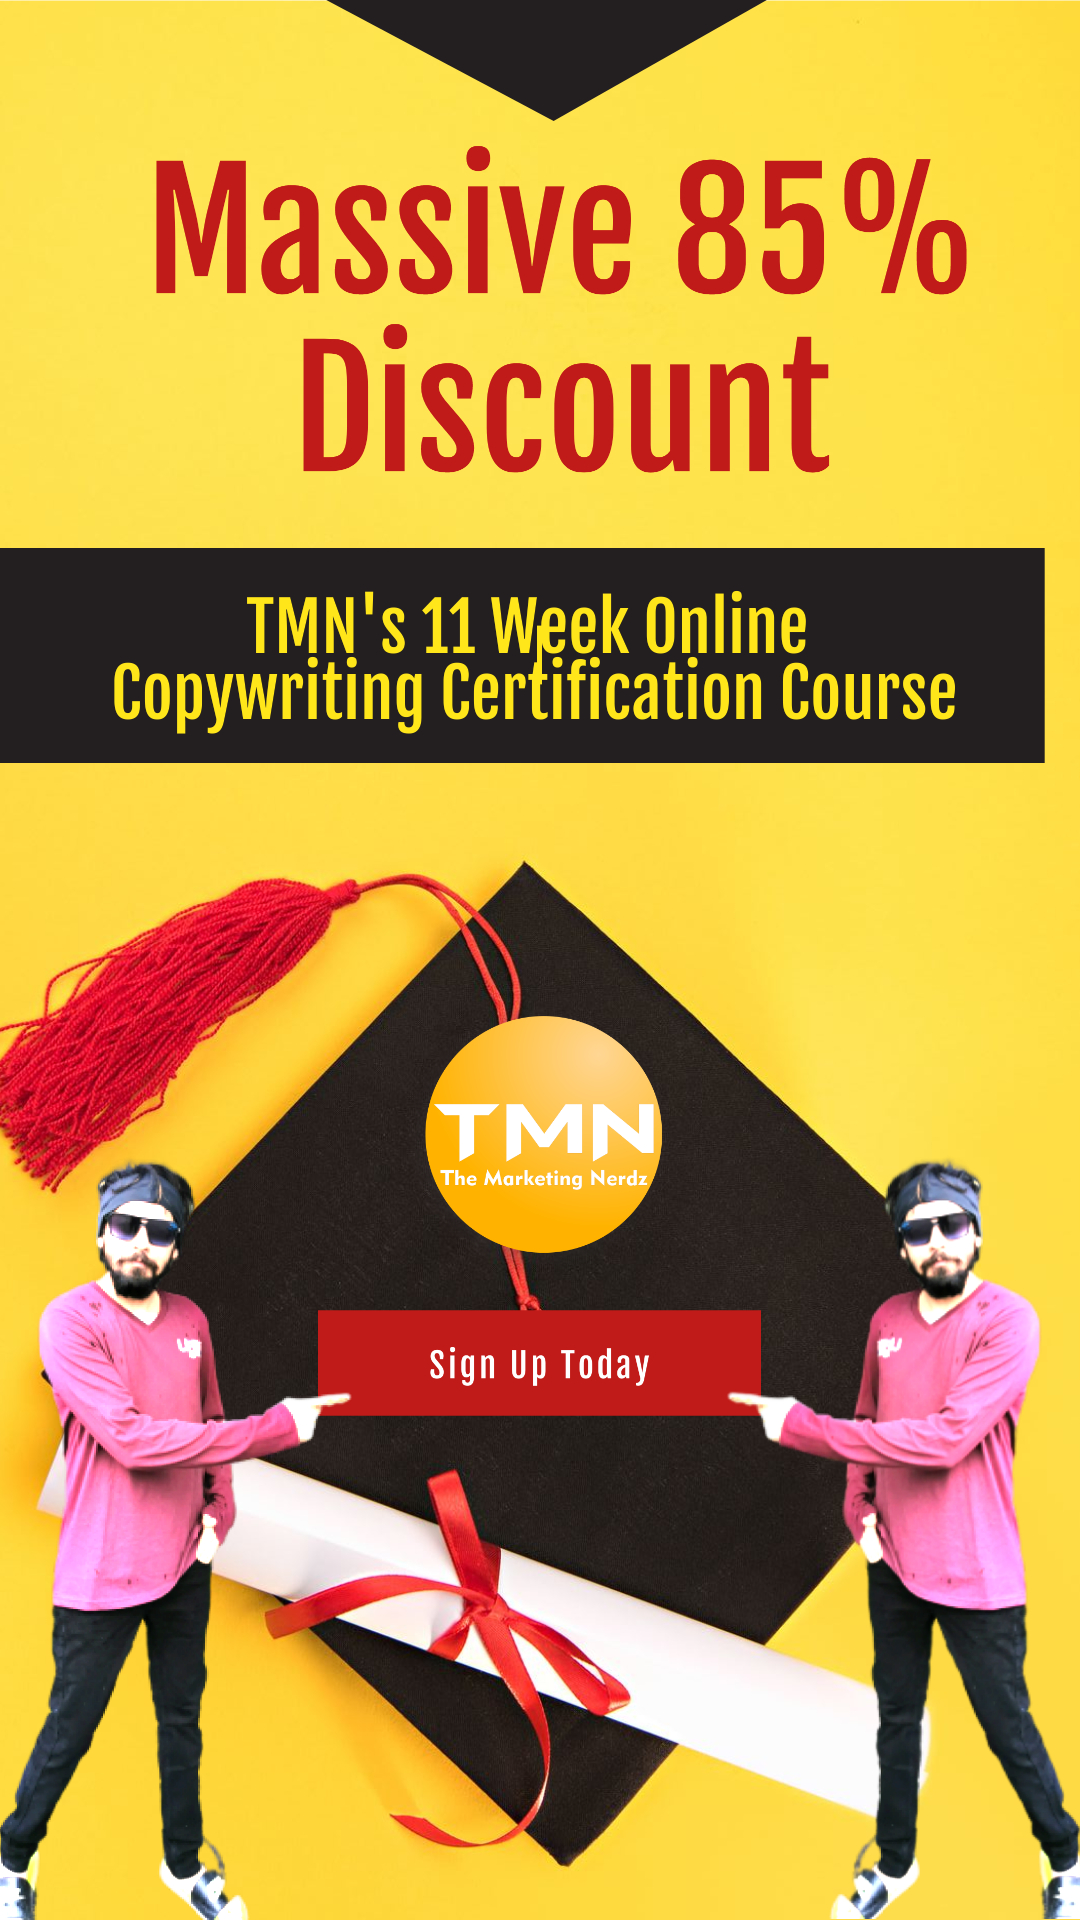 TMN's Copywriting Course